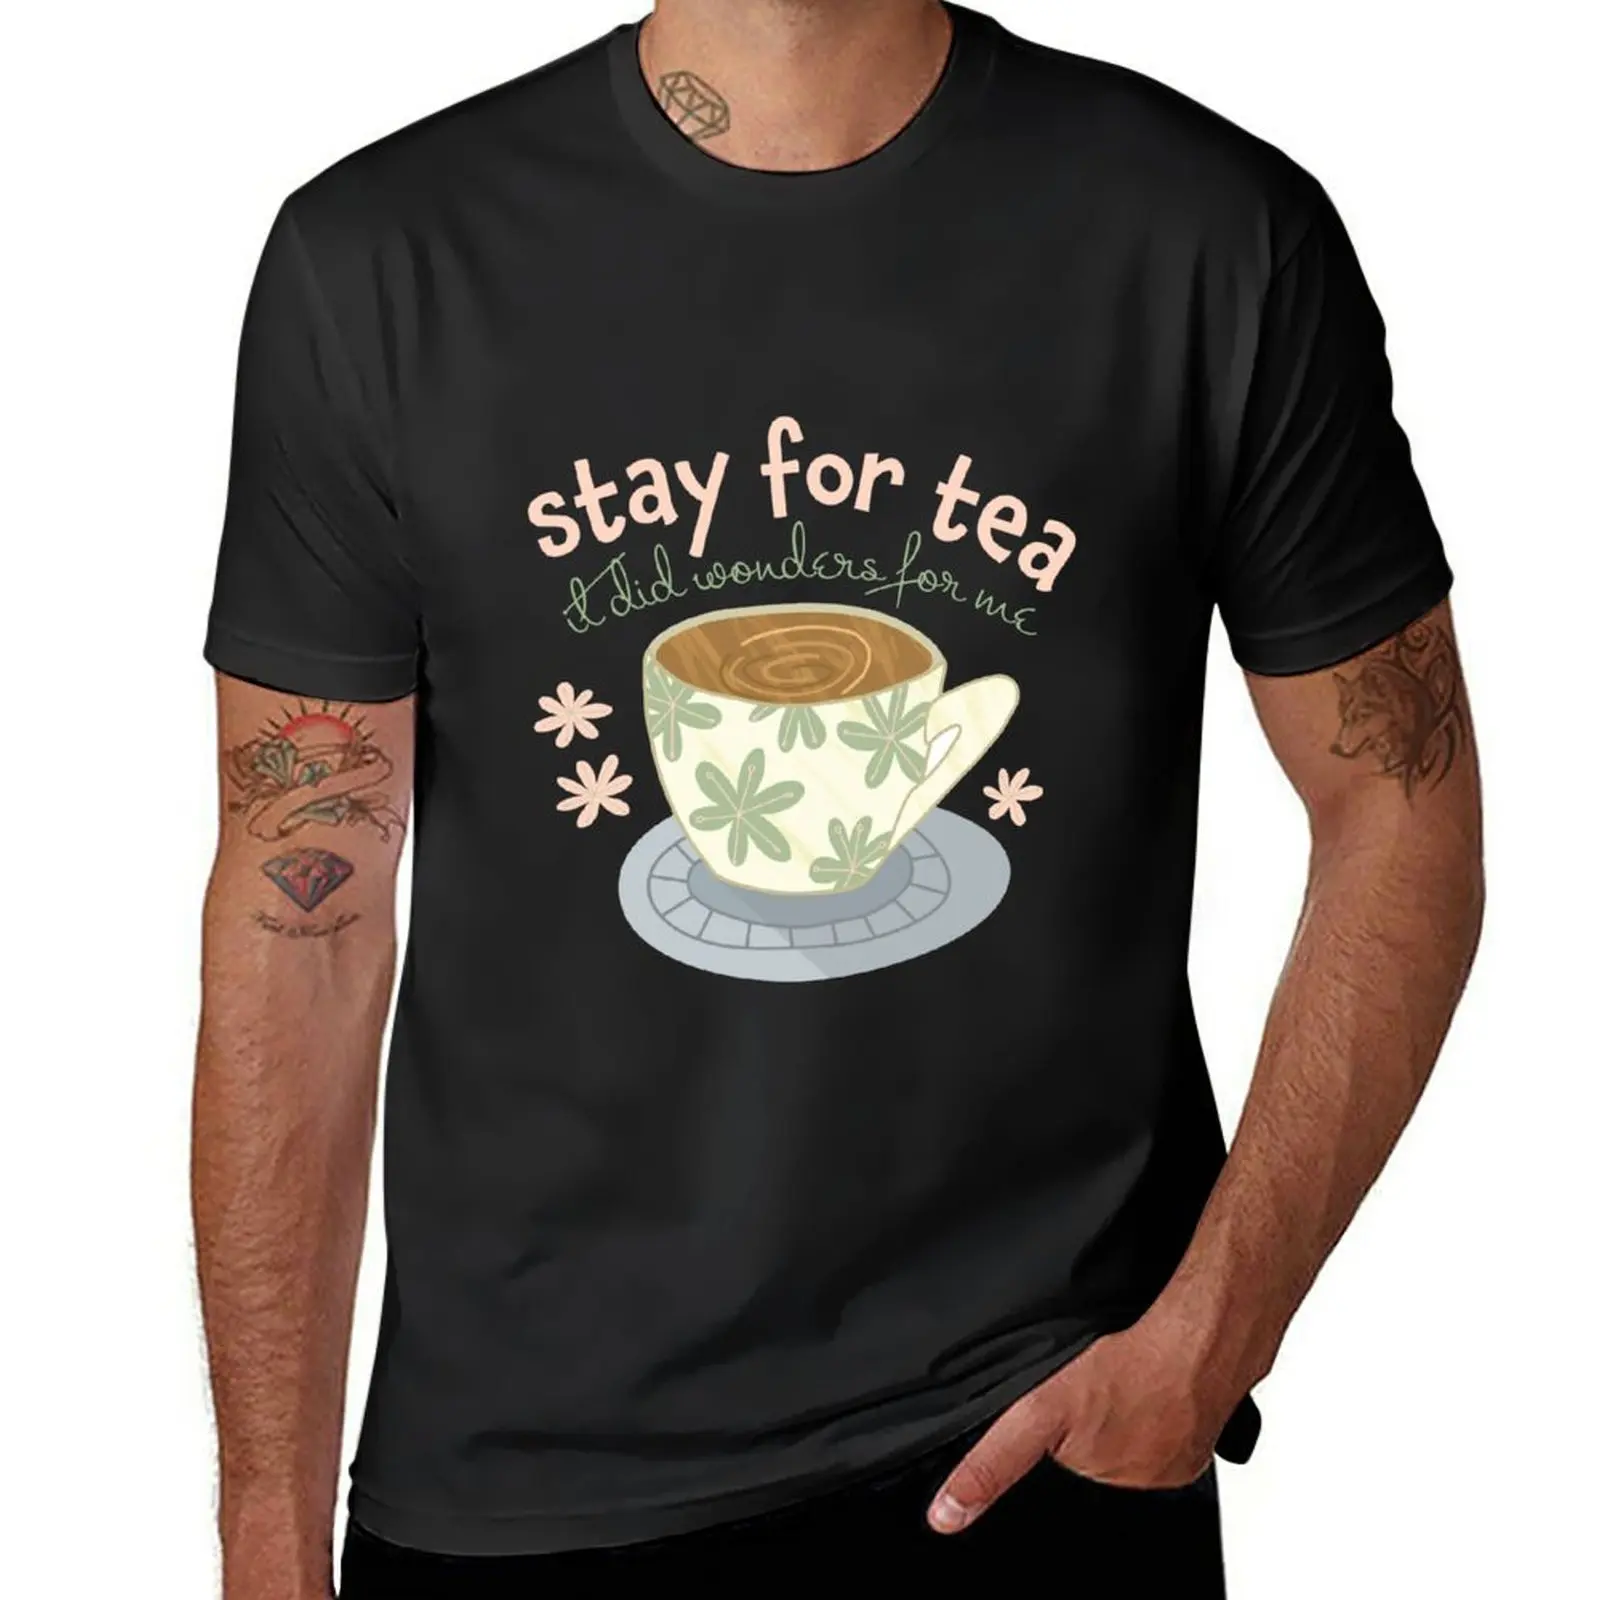 

Новые футболки с надписью «Stay For Tea Bear in футболка с деревьями», милая одежда, мужская футболка, Мужская футболка с графическим рисунком, футболки для мужчин, хлопок